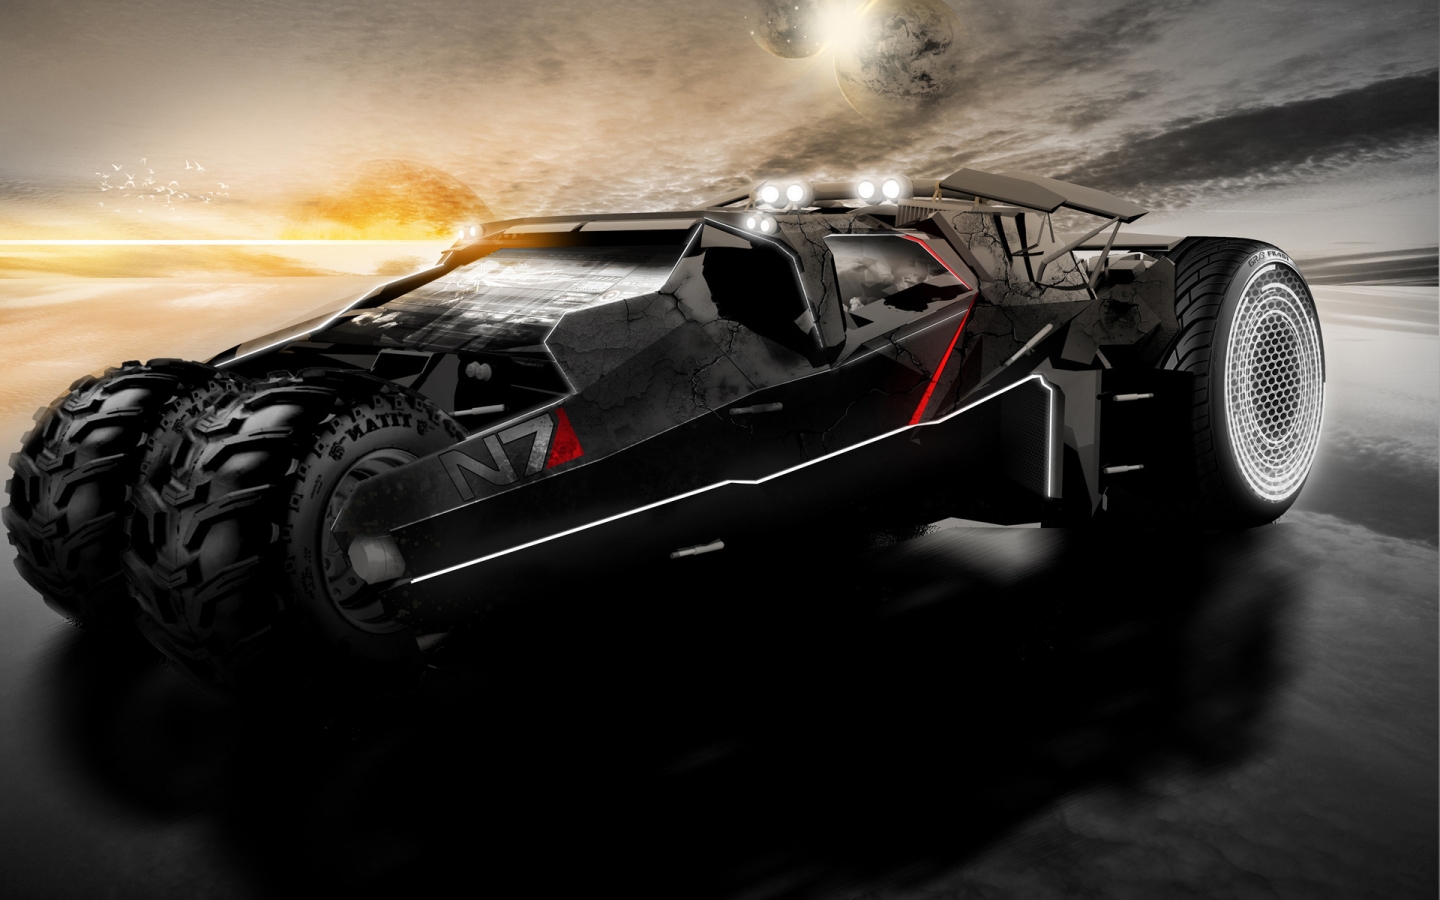 Mass Effect 2 Car for 1440 x 900 widescreen resolution